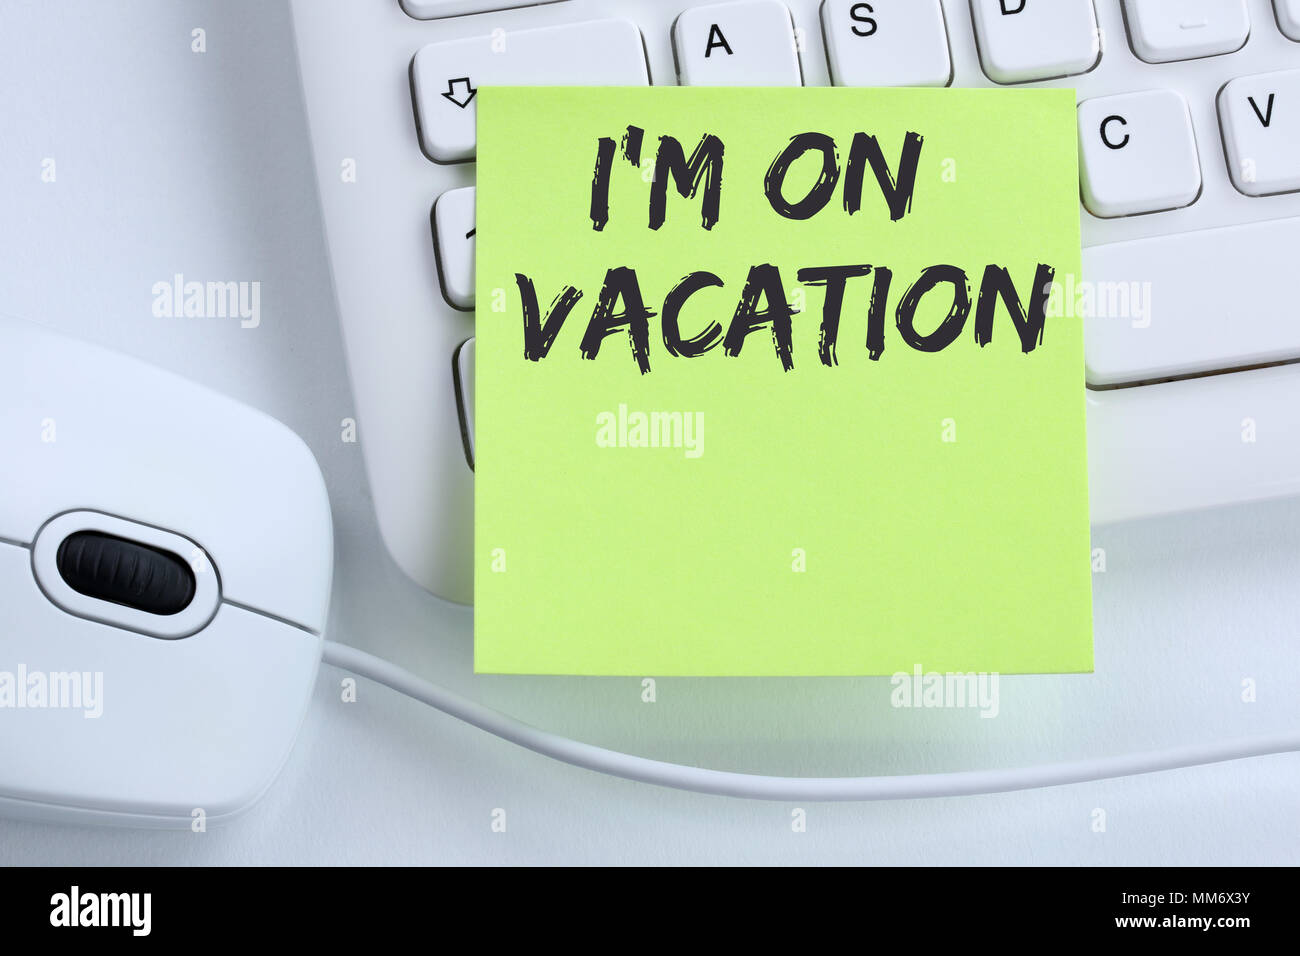 Sto su vacanze viaggi viaggi vacanze vacanze relax vacanza rilassante tempo libero concetto aziendale mouse della tastiera del computer Foto Stock